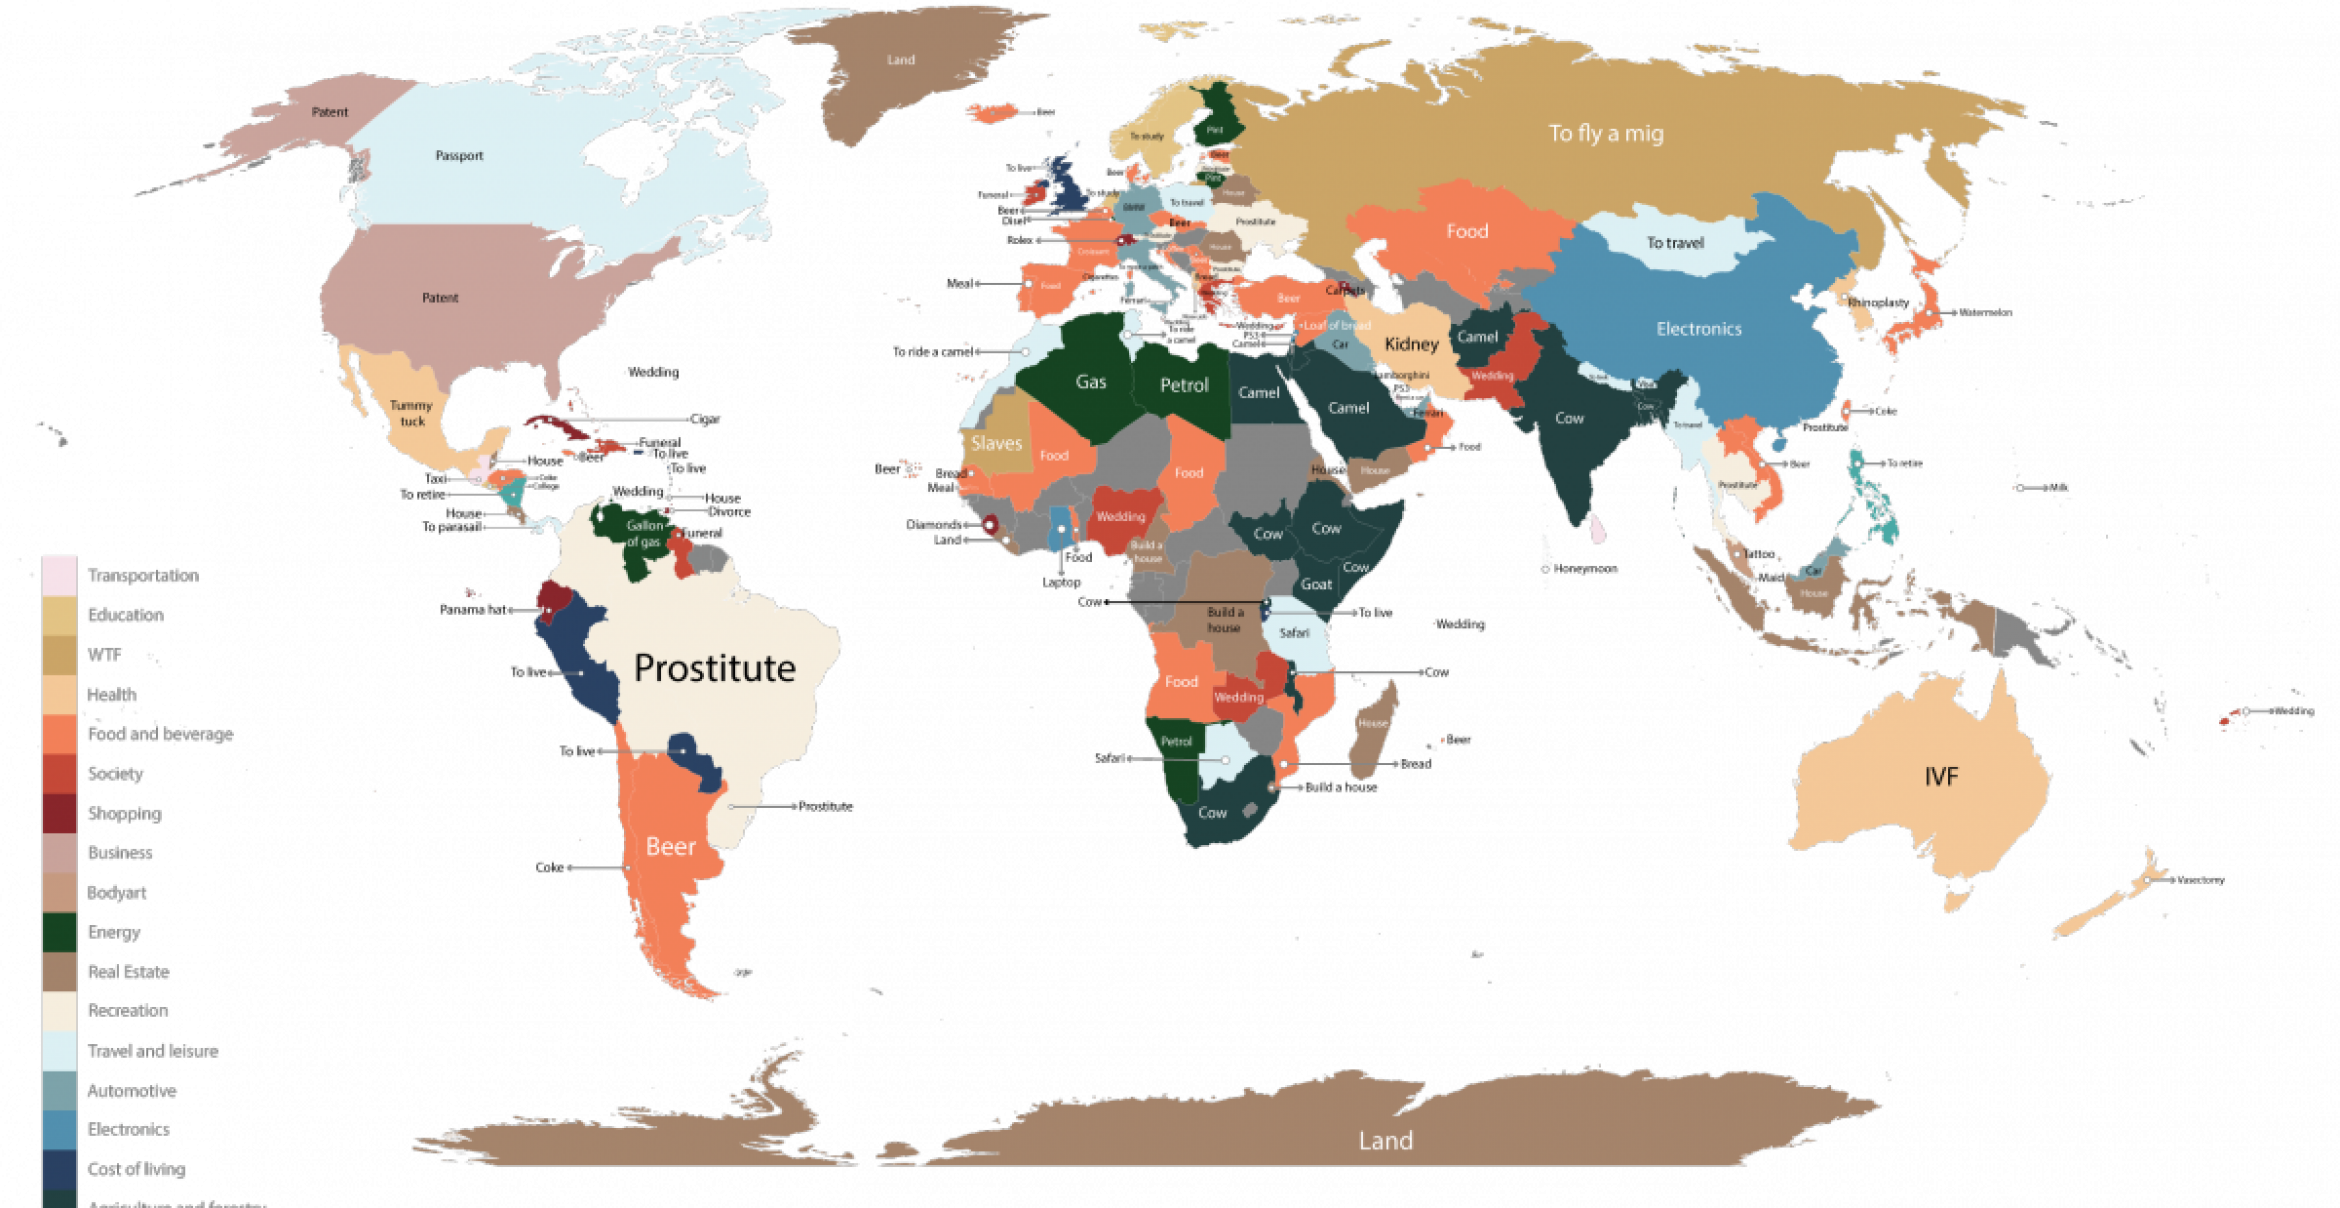 Nasenkorrektur, Kamele und “MIG fliegen“: Das sind die meist gesuchten Begriffe bei Google in einer Weltkarte